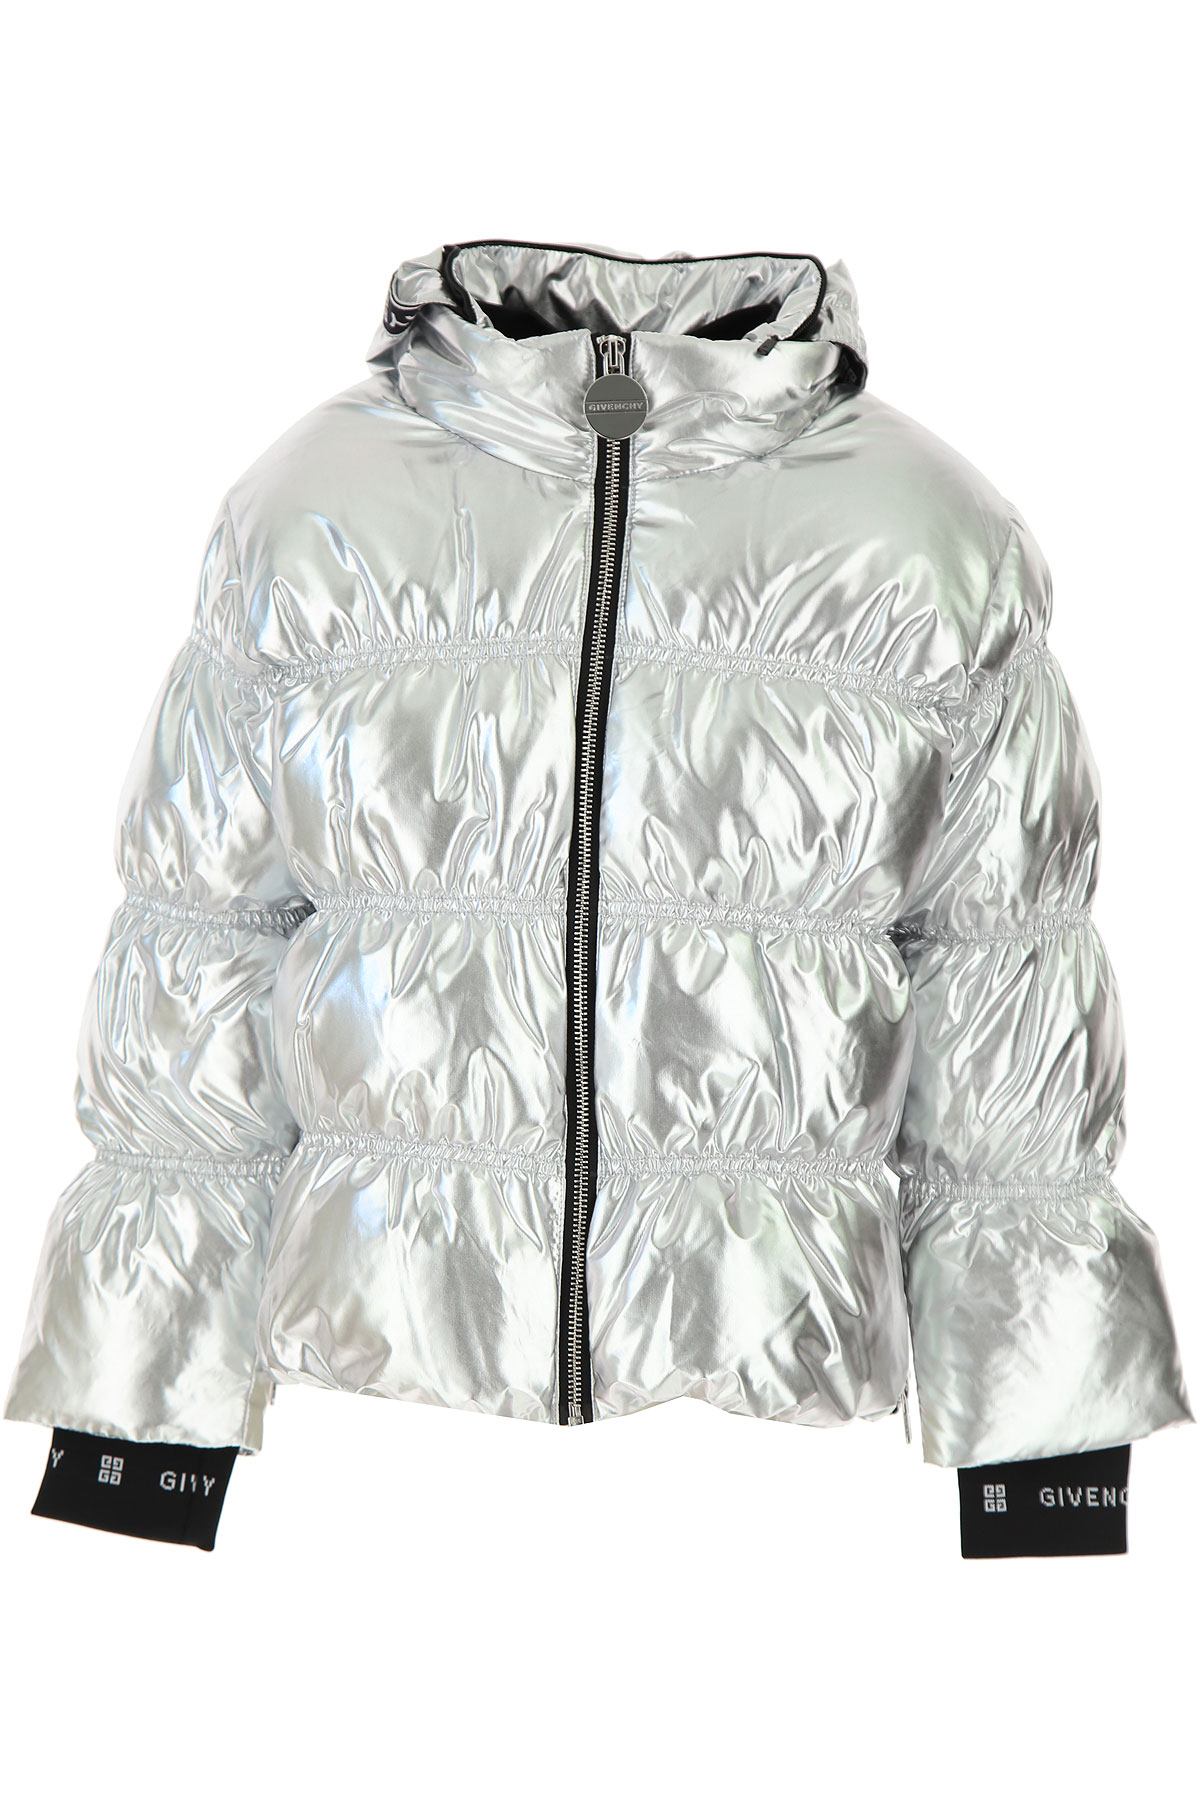 Givenchy Kinder Daunen Jacke für Mädchen, Soft Shell Ski Jacken Günstig im Sale, Silber, Polyester, 2017, 10Y 12Y